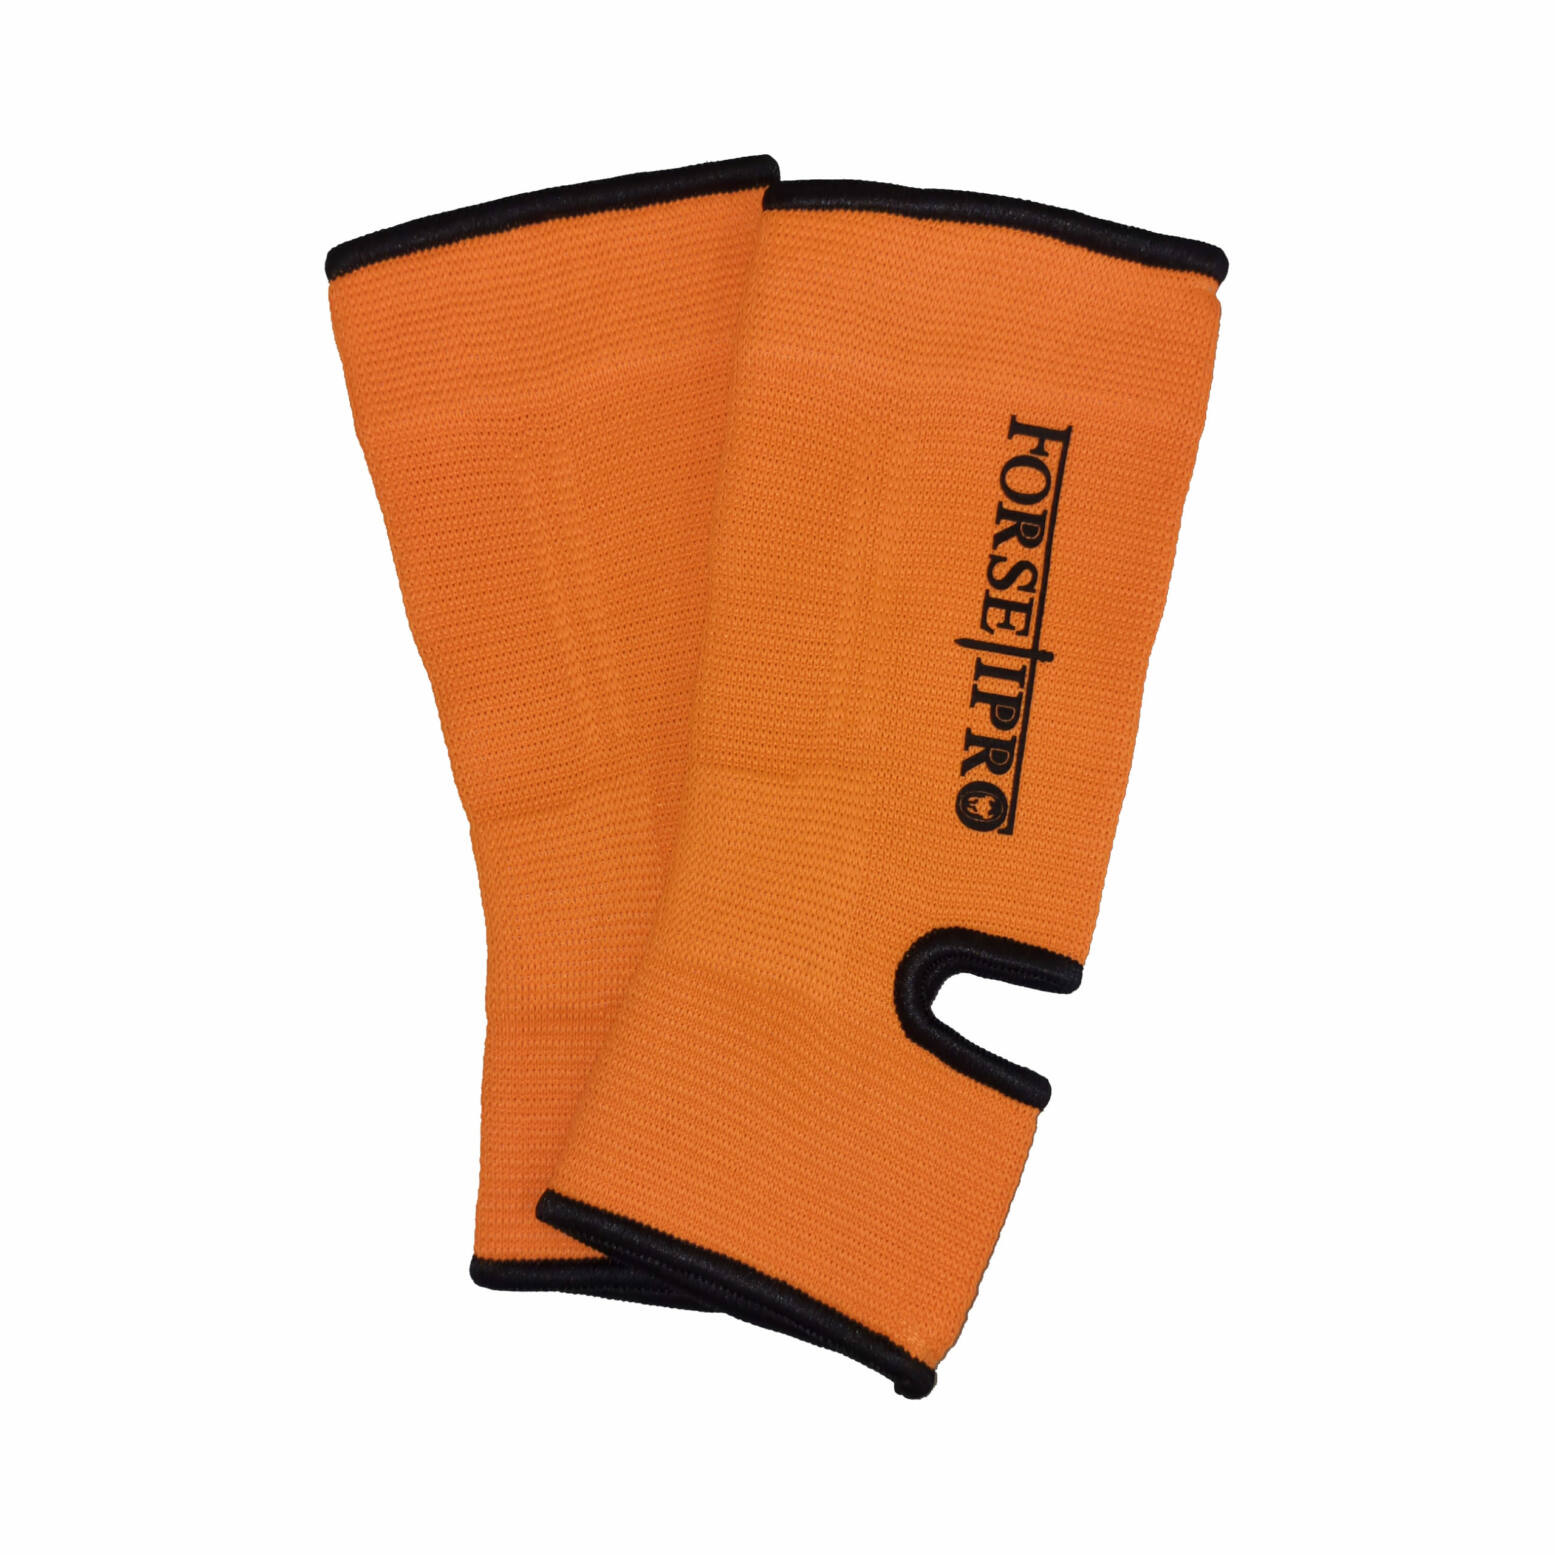 Forseti Pro Enkelkousen B-Stock – Oranje met zwart 1